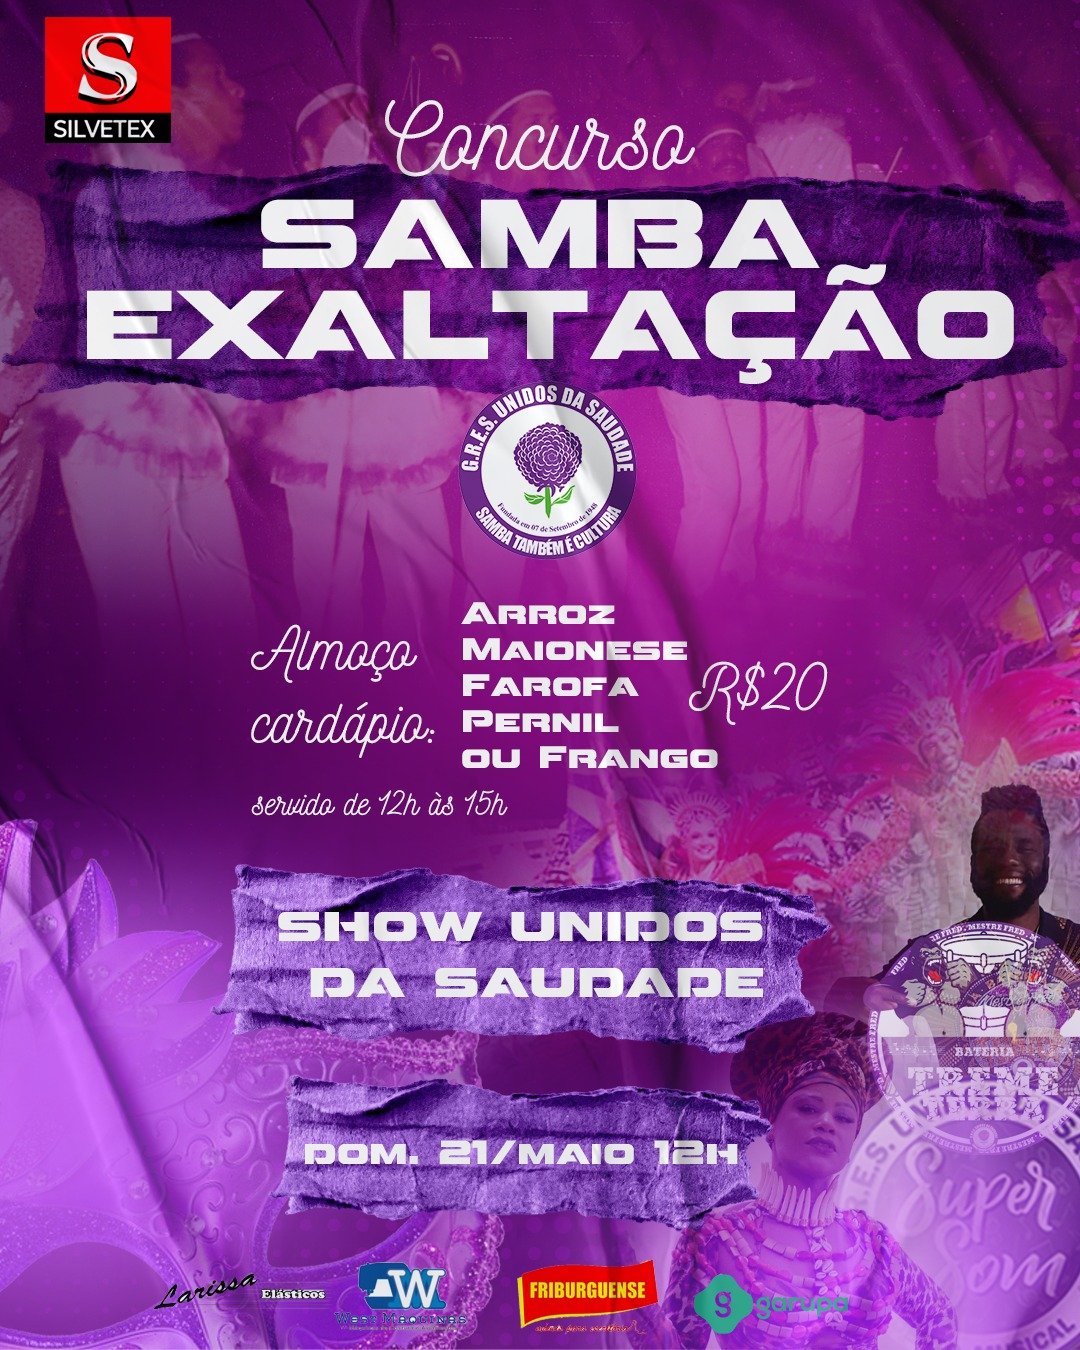 Unidos da Saudade de Nova Friburgo apresenta sambas-exaltação em disputa neste domingo, 21